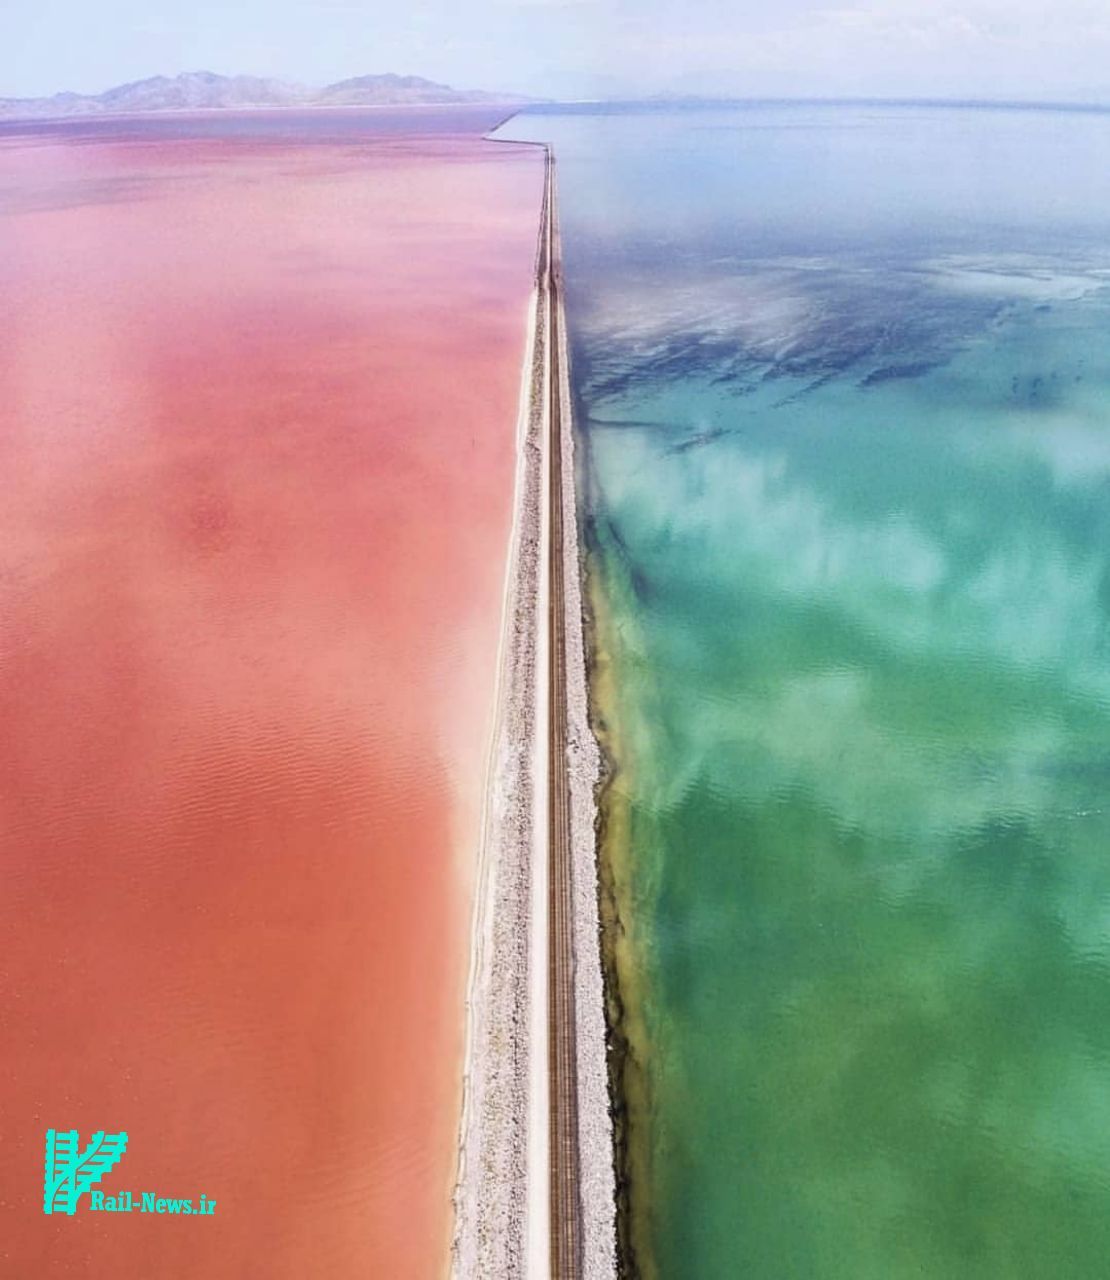 دریاچه رنگی بزرگ نمک در ایالت یوتا Utah و تقسیم آن به دو قسمت توسط راه آهن + عکس